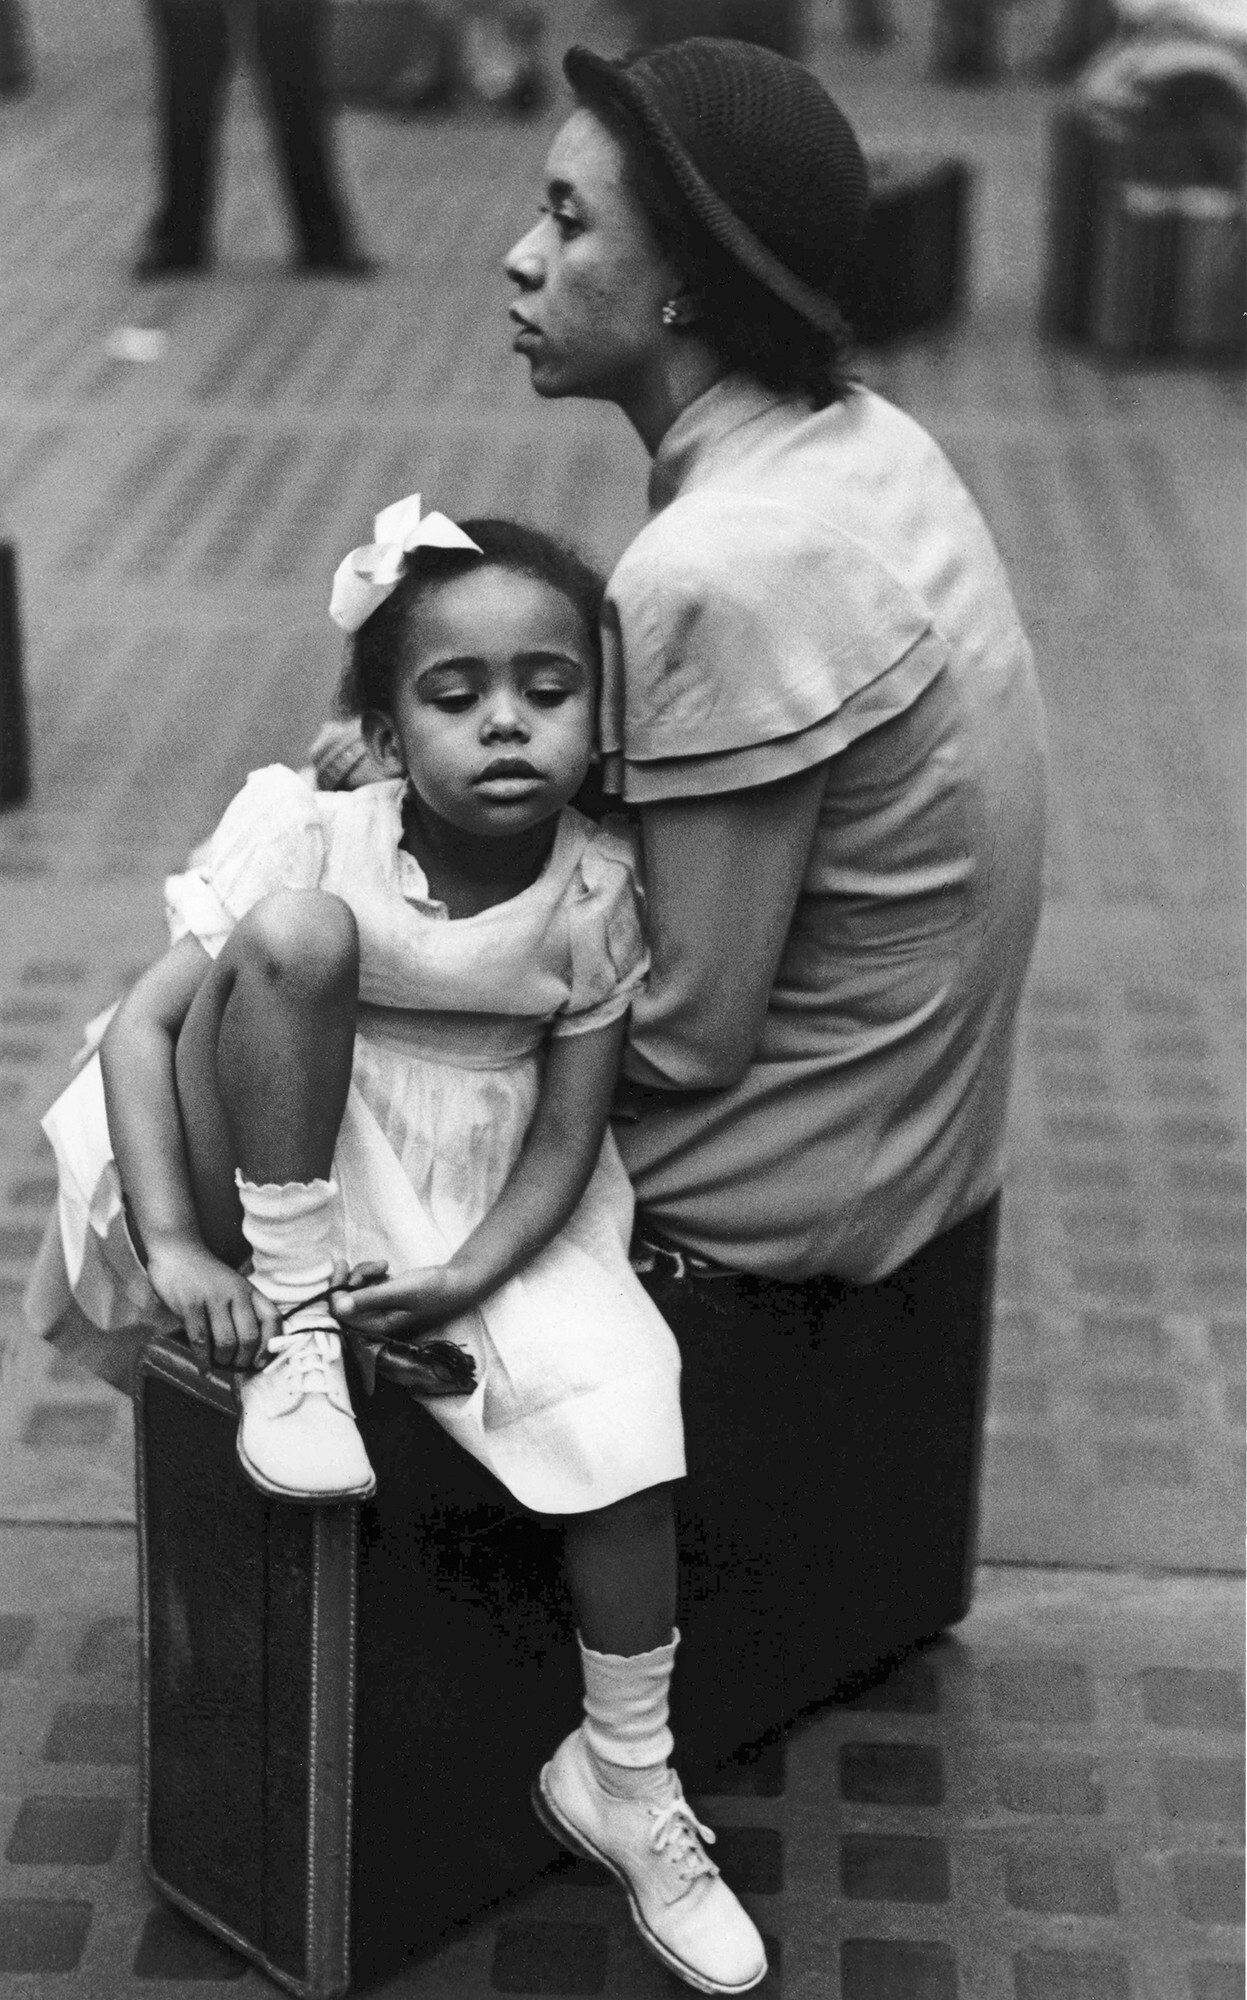 Мать и дочь на чемодане, Пенсильванский вокзал, Нью-Йорк, 1947 год. Фотограф Рут Оркин